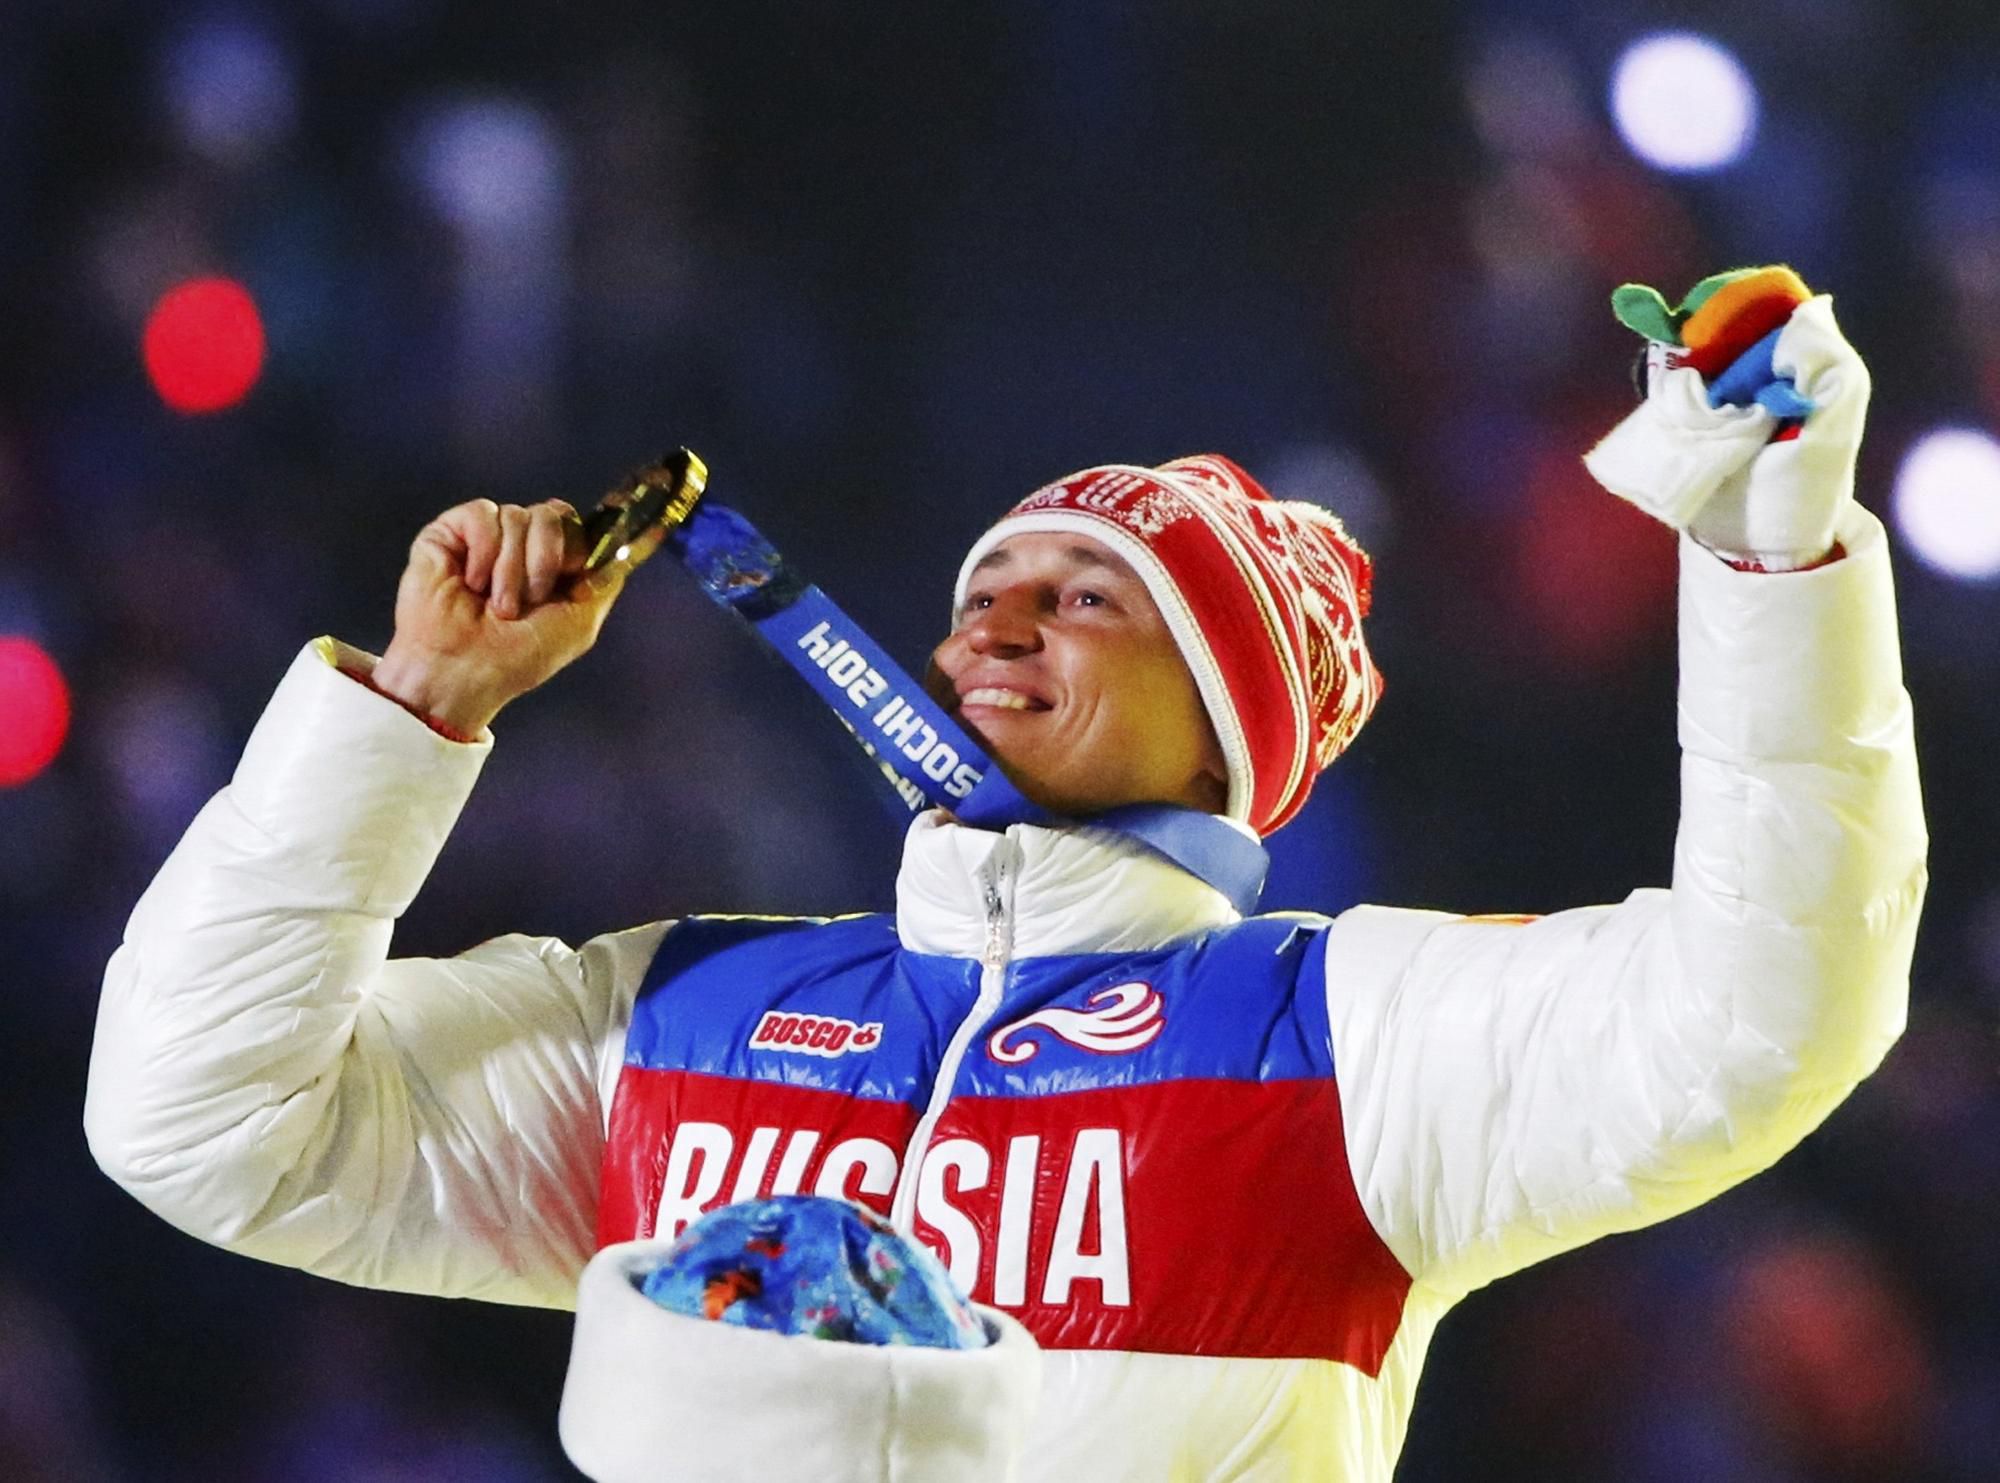 Medzi prvými ruskými športovcami, ktorých potrestali za doping a manipuláciu so vzorkami počas hier v Soči, bol aj bežec na lyžiach Alexander Legkov.